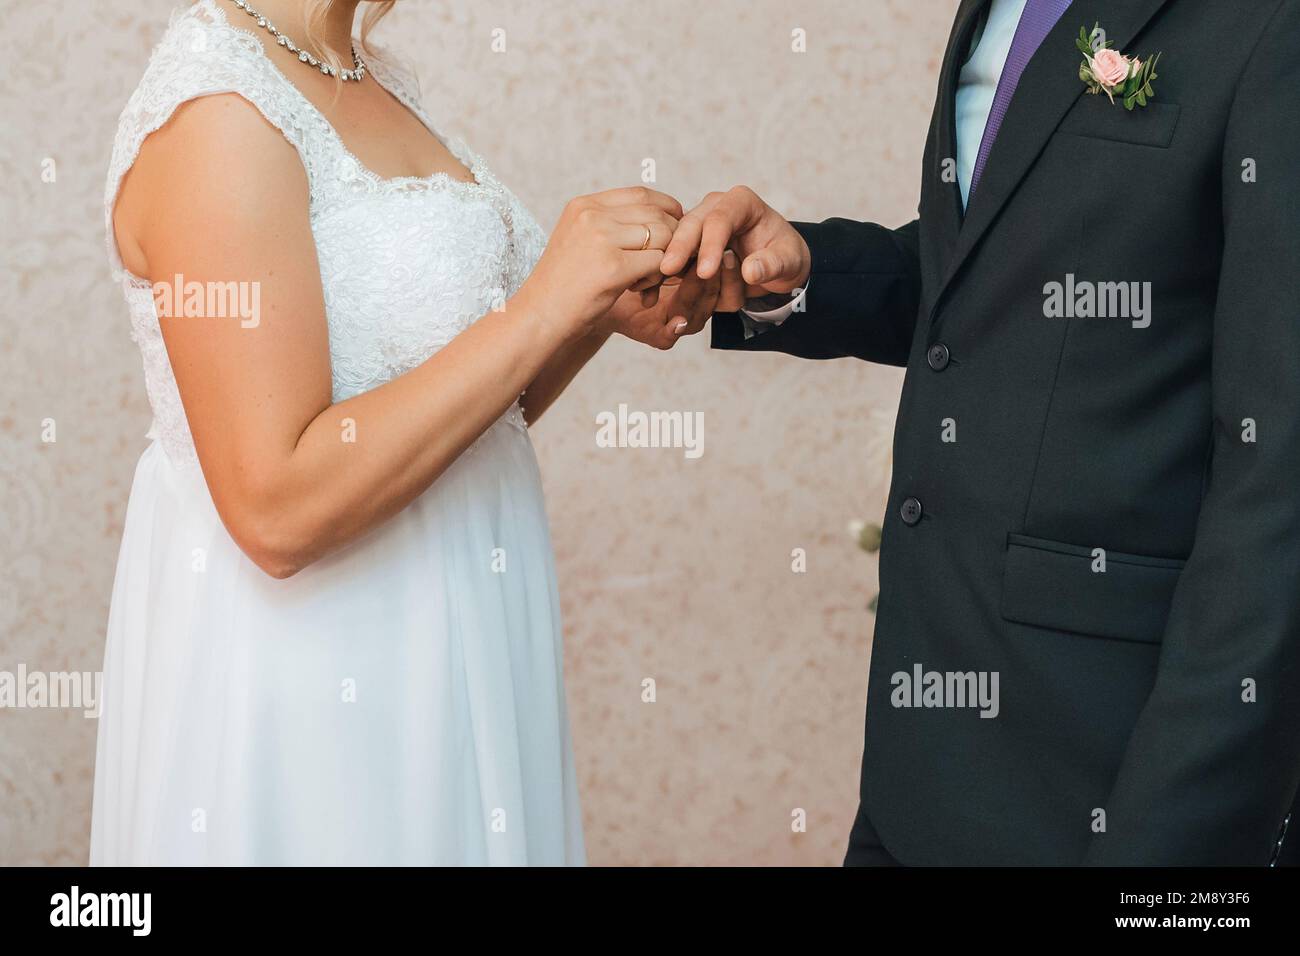 tradizionale cerimonia nuziale di scambio di anelli d'oro tra la sposa e lo sposo. Voti per rafforzare l'Unione familiare e per essere insieme per sempre Foto Stock